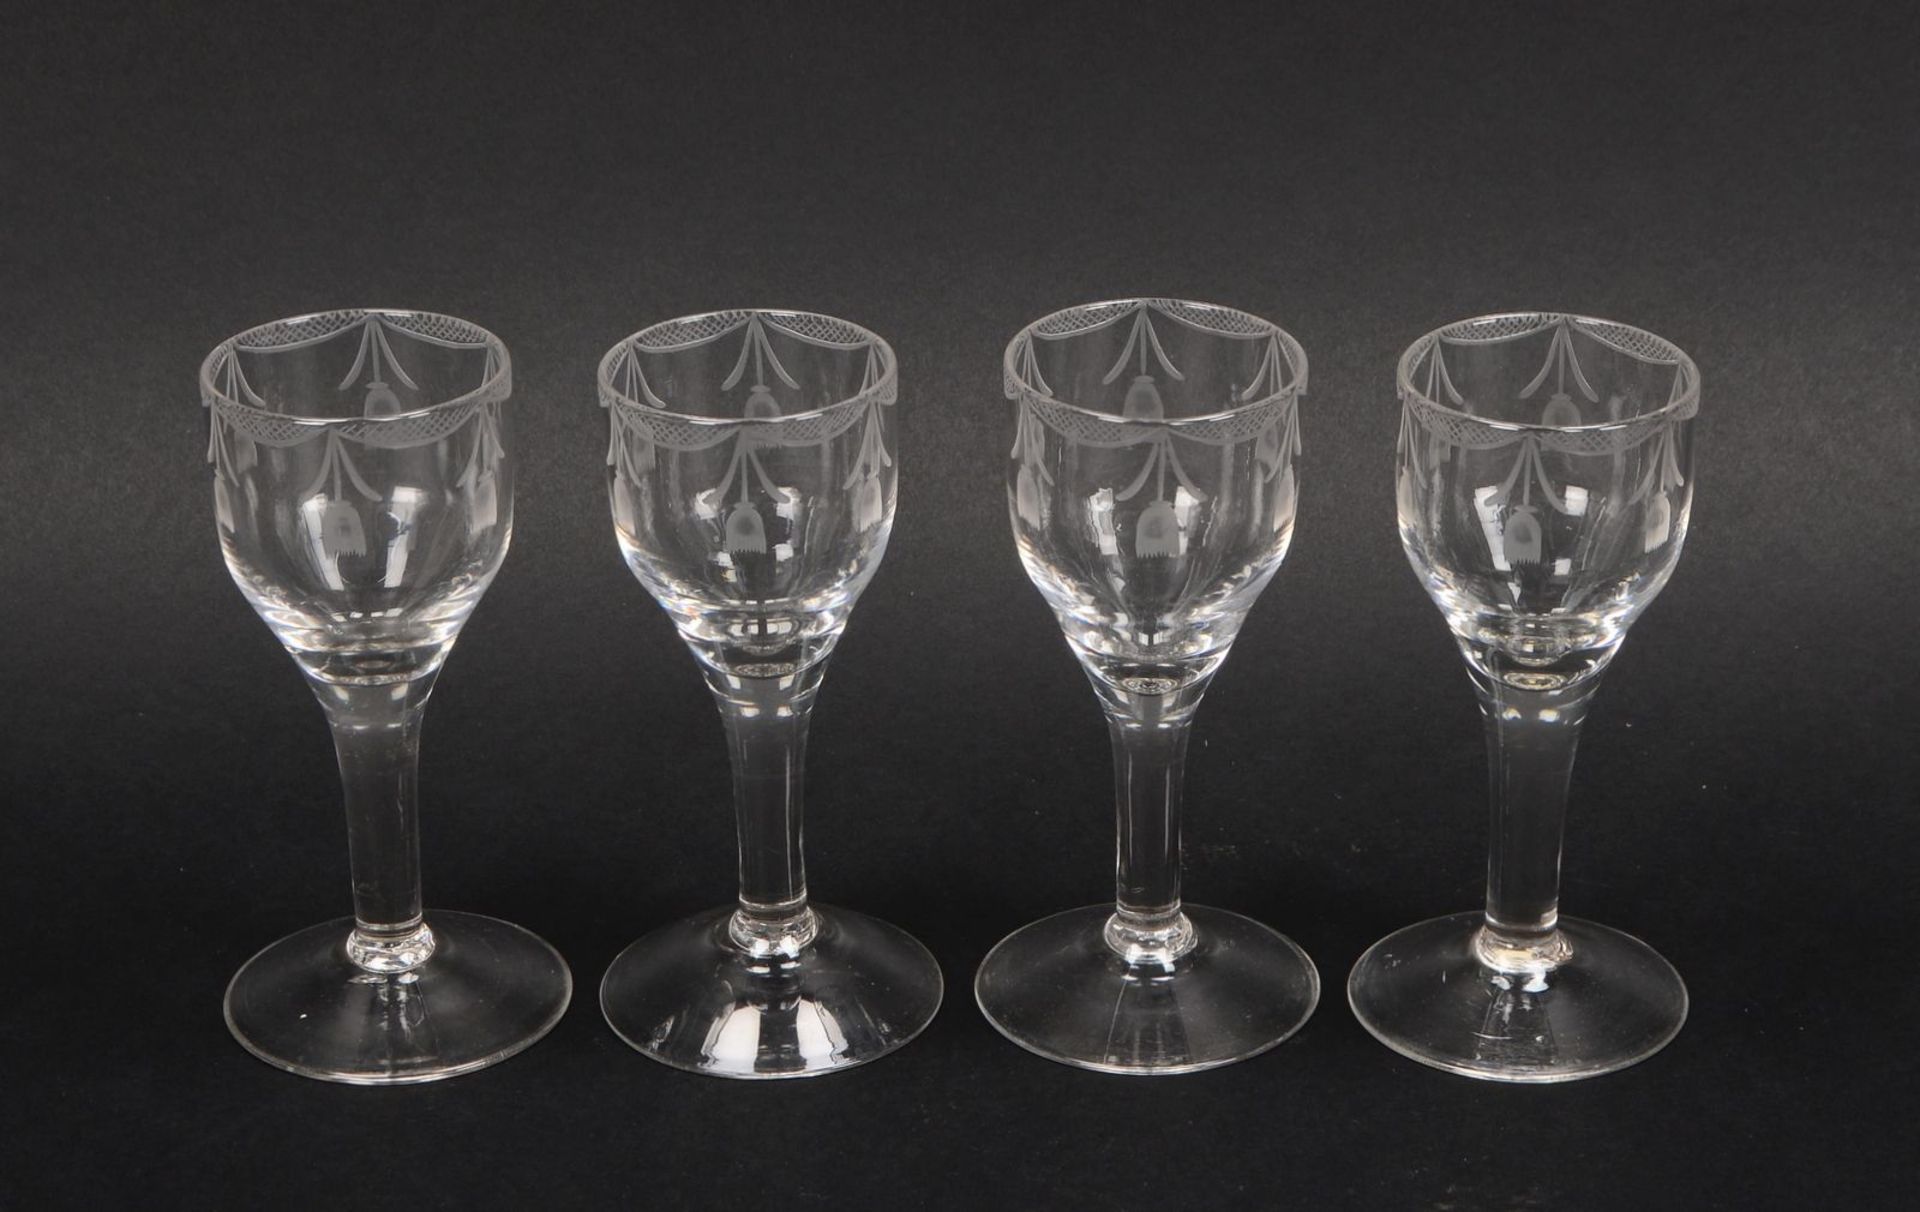 Weinglas-Konvolut (England - wohl Empire), teils mit mattiertem Dekor, jeweils mit Abriss, 4 St&uuml - Image 2 of 2